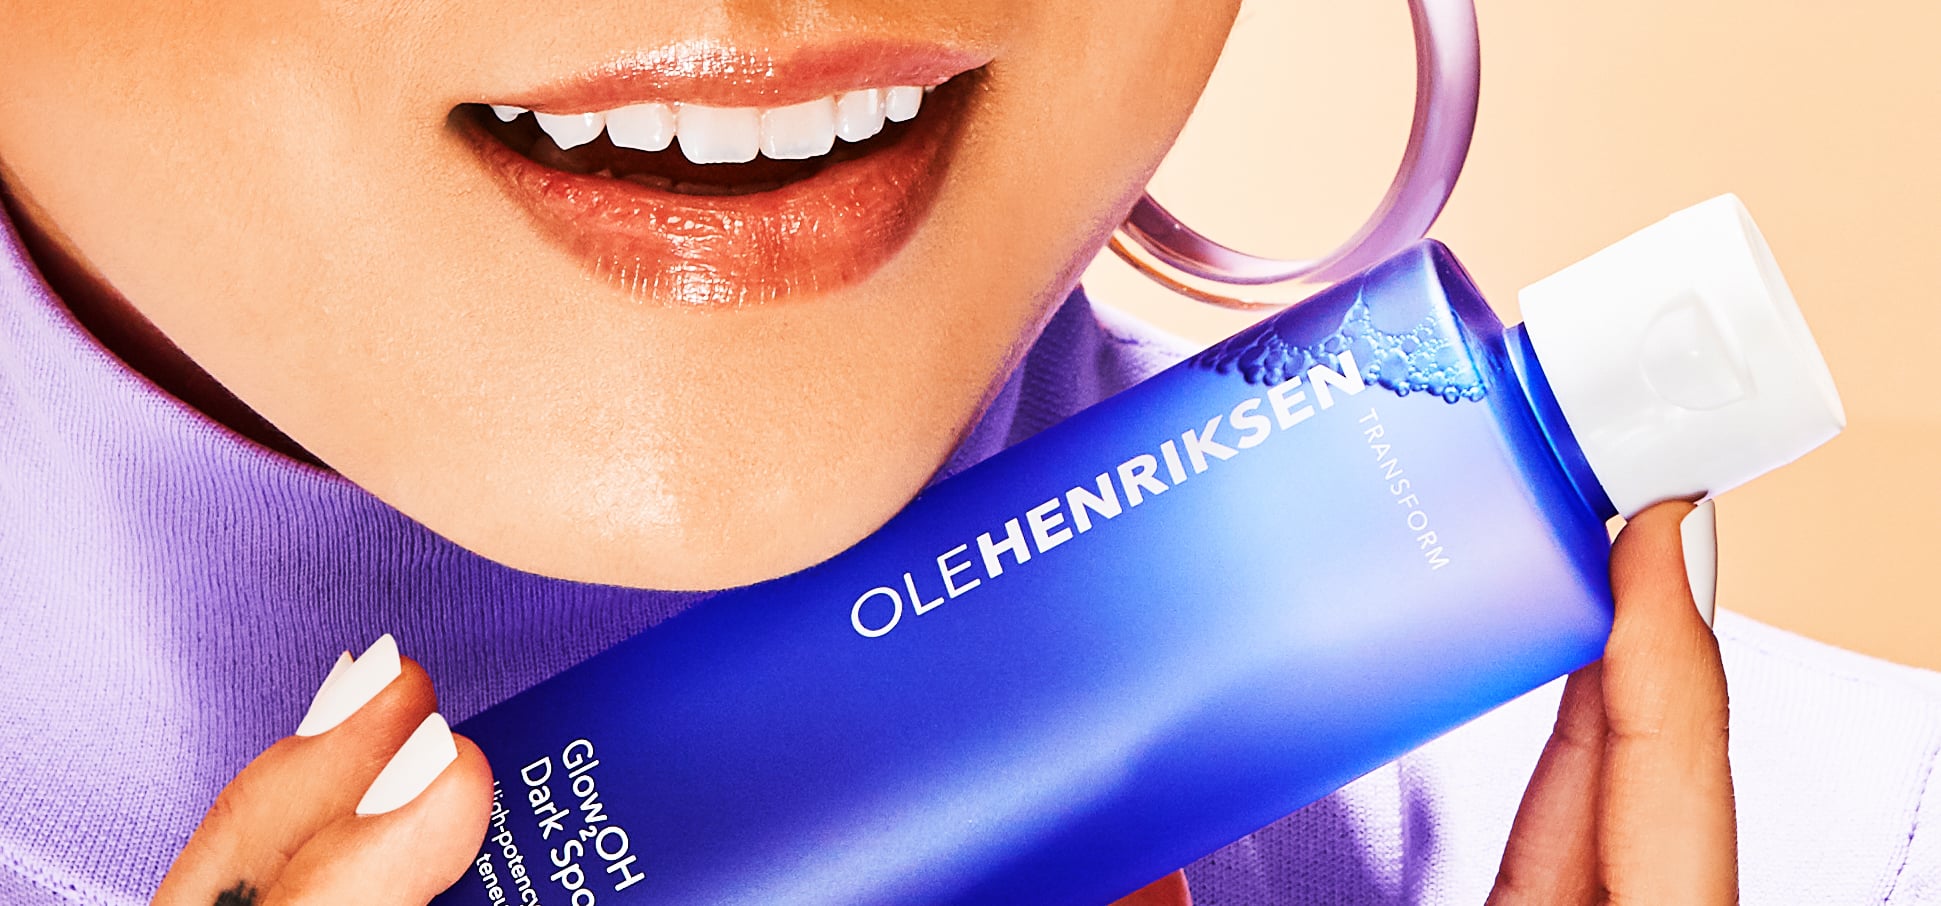 Ole Henriksen Skin Care Just Got a Major Makeover